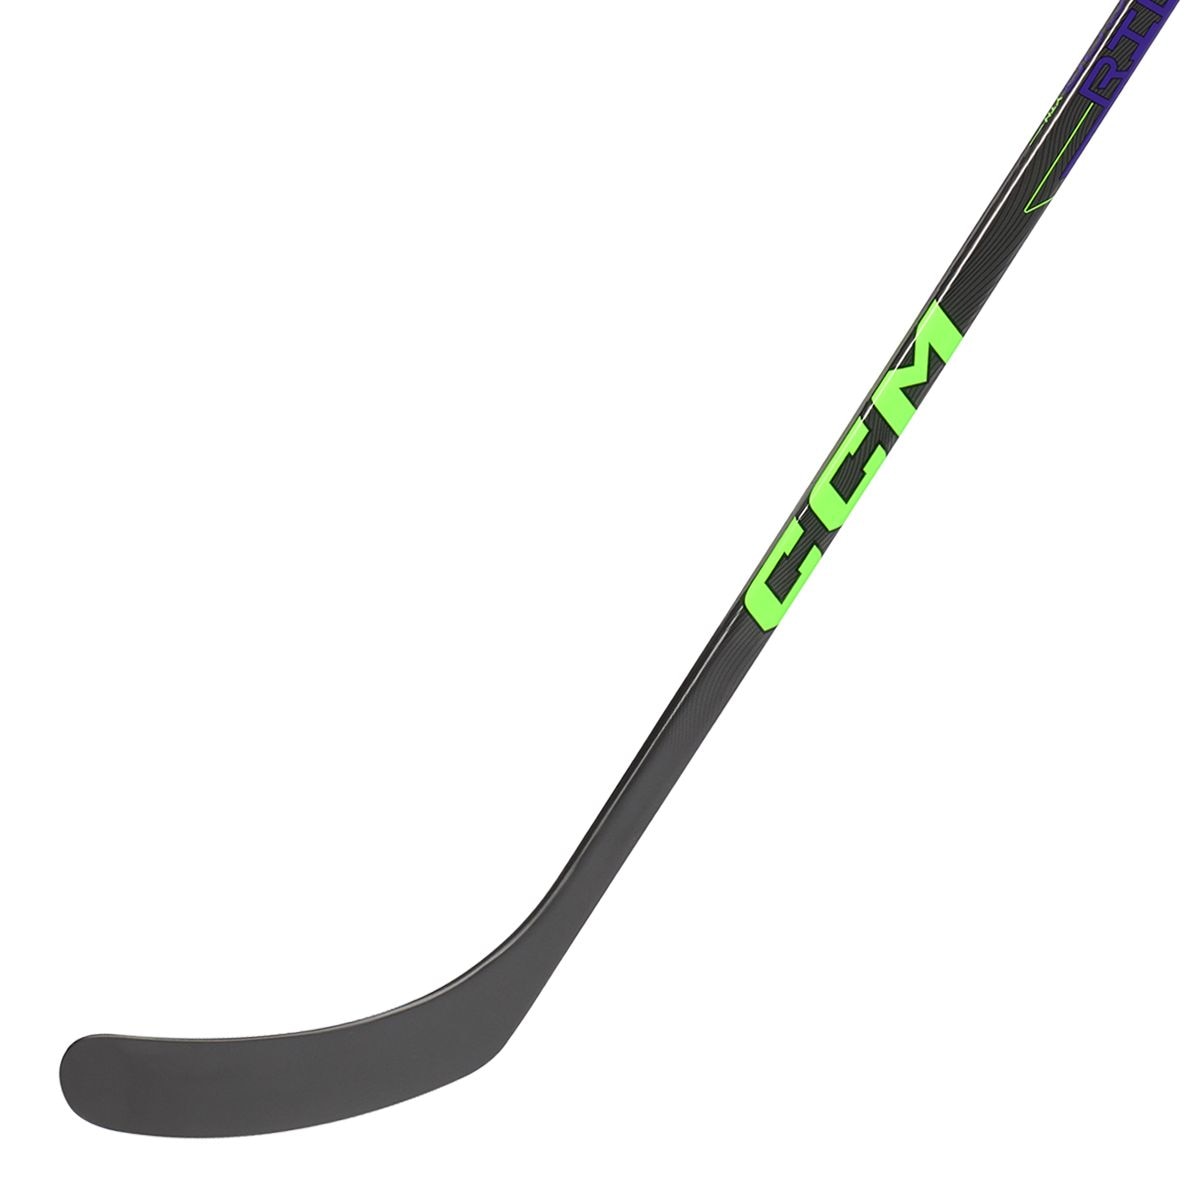 Image of CCM Ribcor Youth Hockey Stick